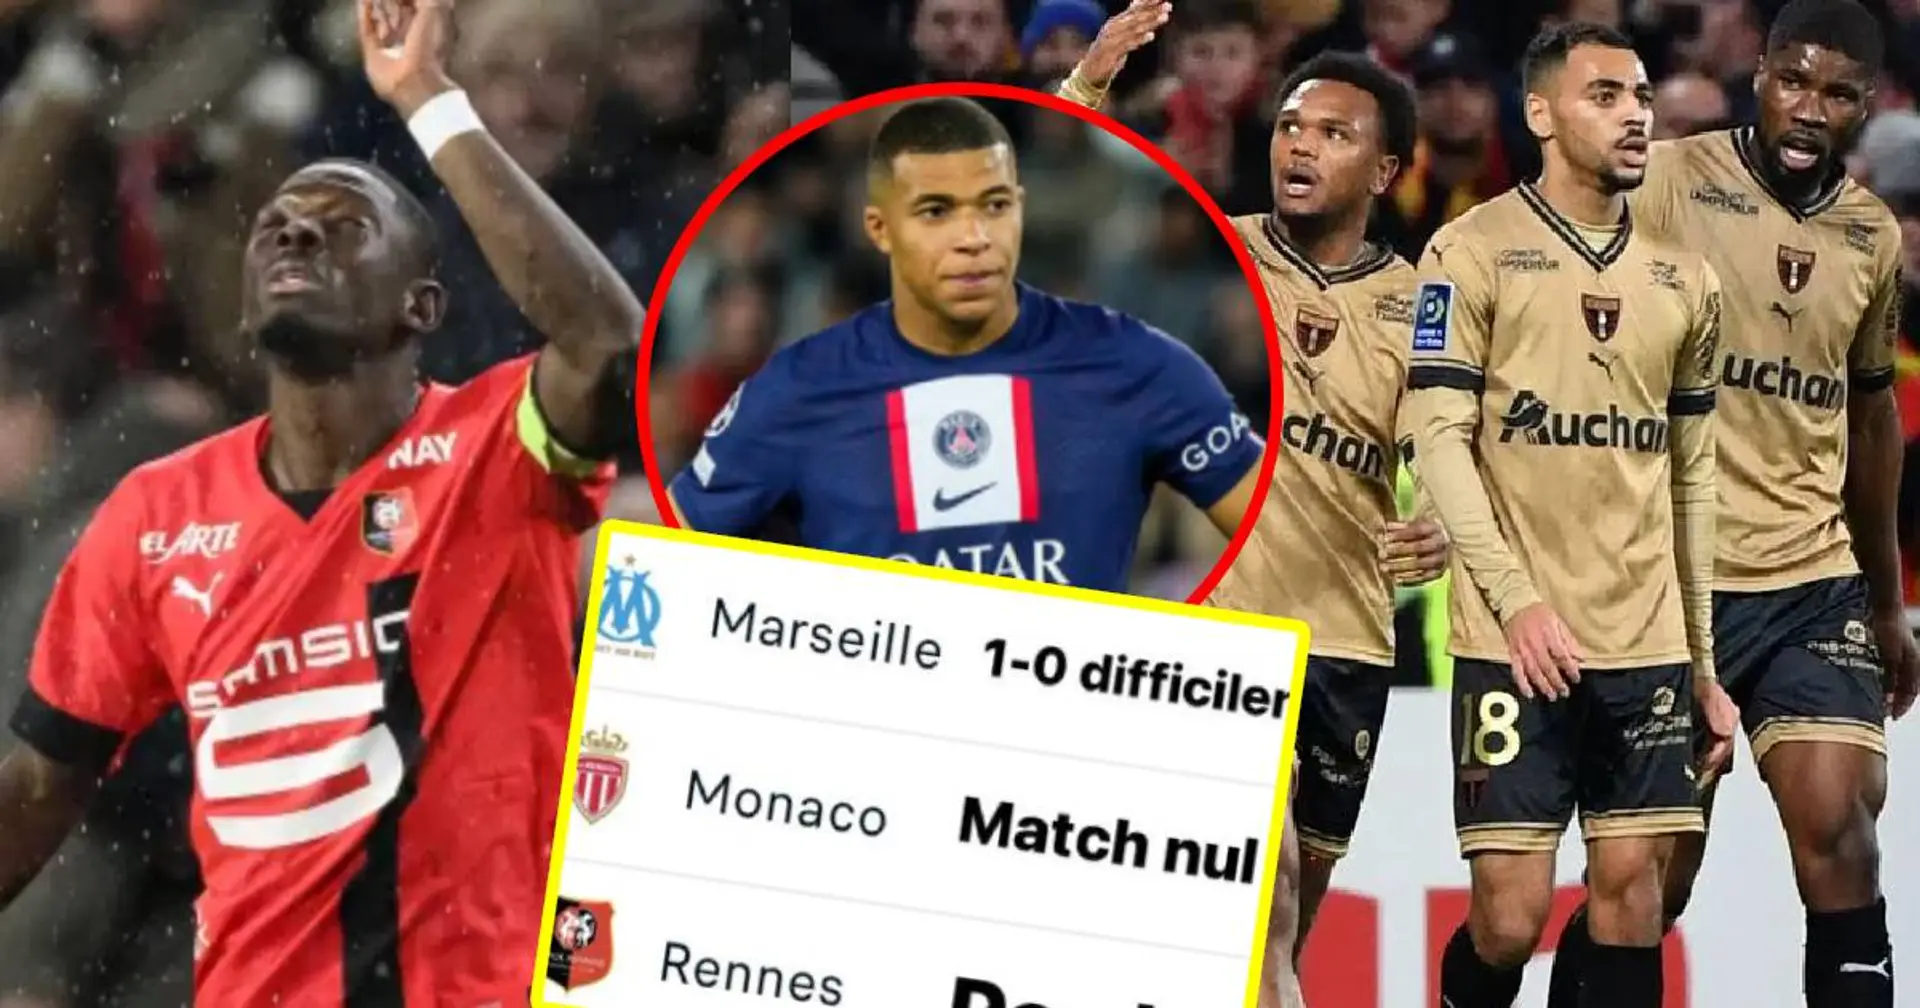 "Ca craint" : Un fan pointe du doigt une stat du PSG face au top 5 de Ligue 1